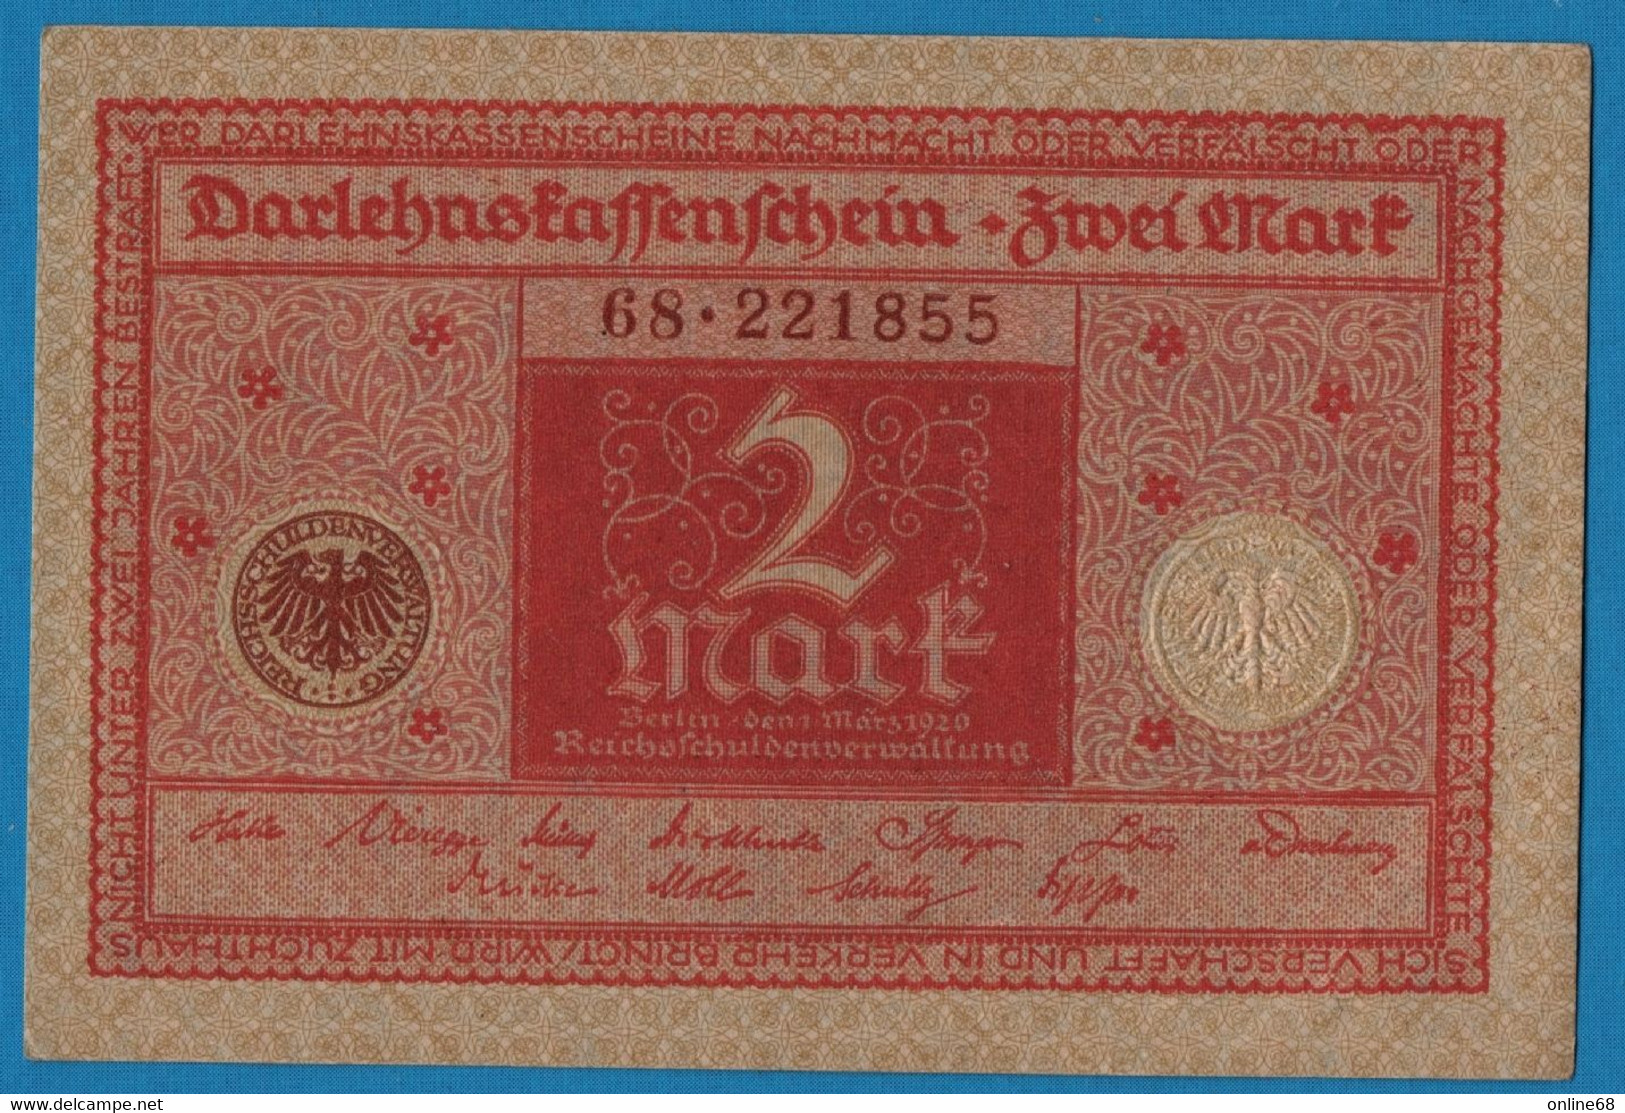 DEUTSCHES REICH 2 MARK 01.03.1920  # 68.221855 P# 59  DARLEHENSKASSENSCHEIN - Imperial Debt Administration